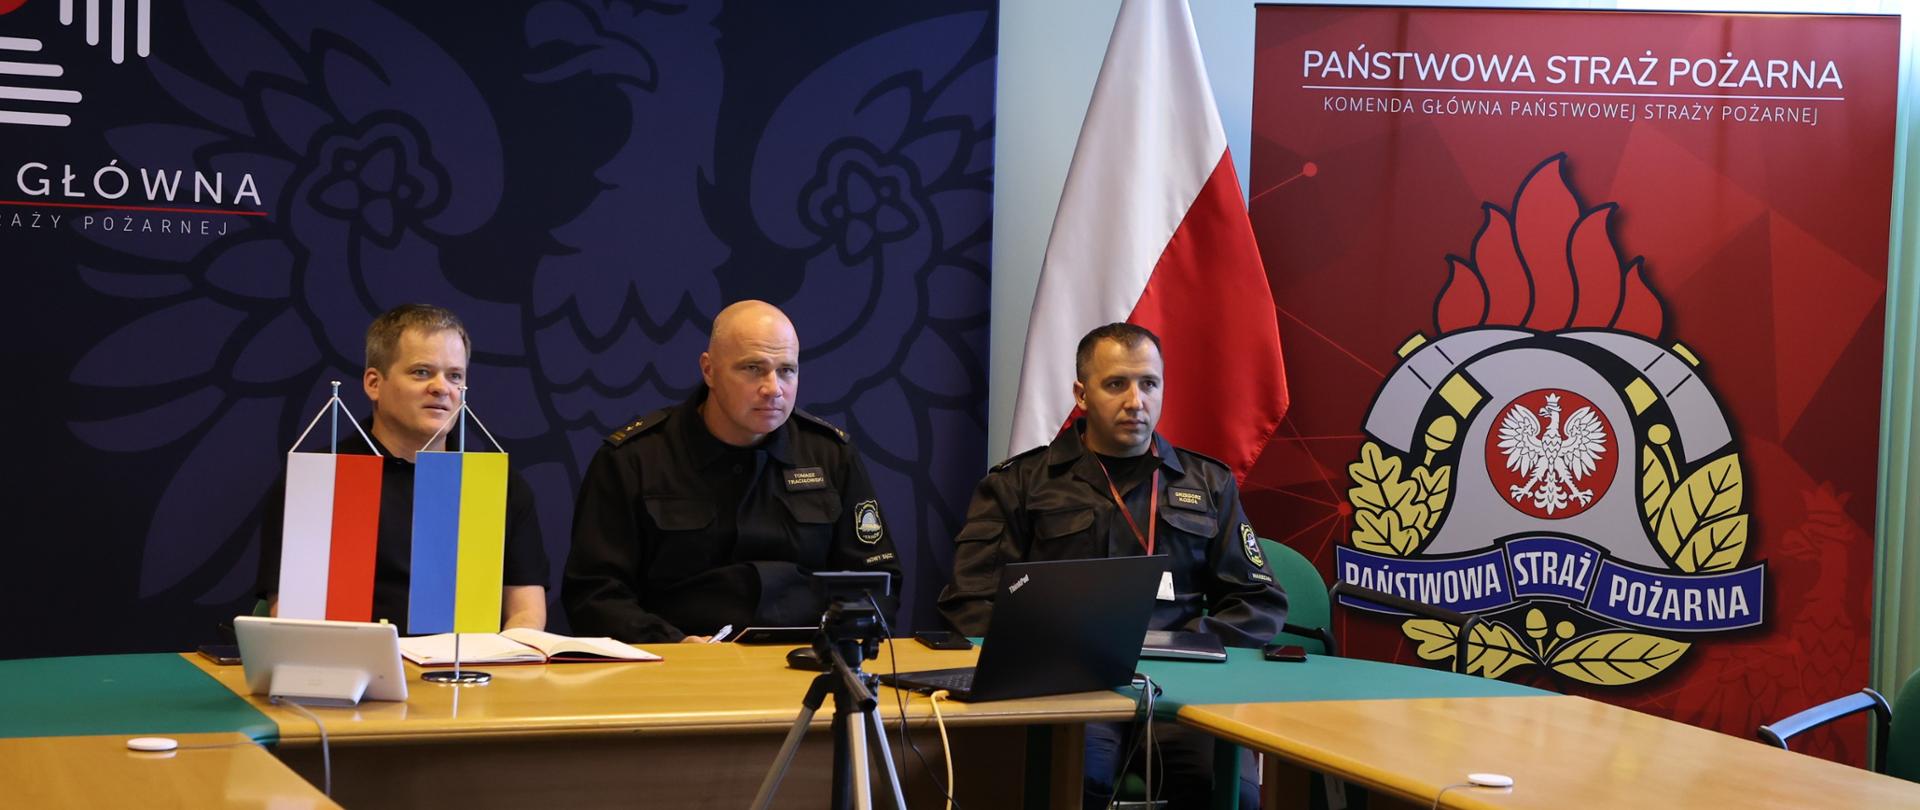 Na zdjęciu widać przedstawicieli Komendy Głównej Państwowej Straży Pożarnej siedzących przy stole konferencyjnym w czasie wideokonferencji z przedstawicielami straży pożarnej Ukrainy. W tle banery z logo PSP. 